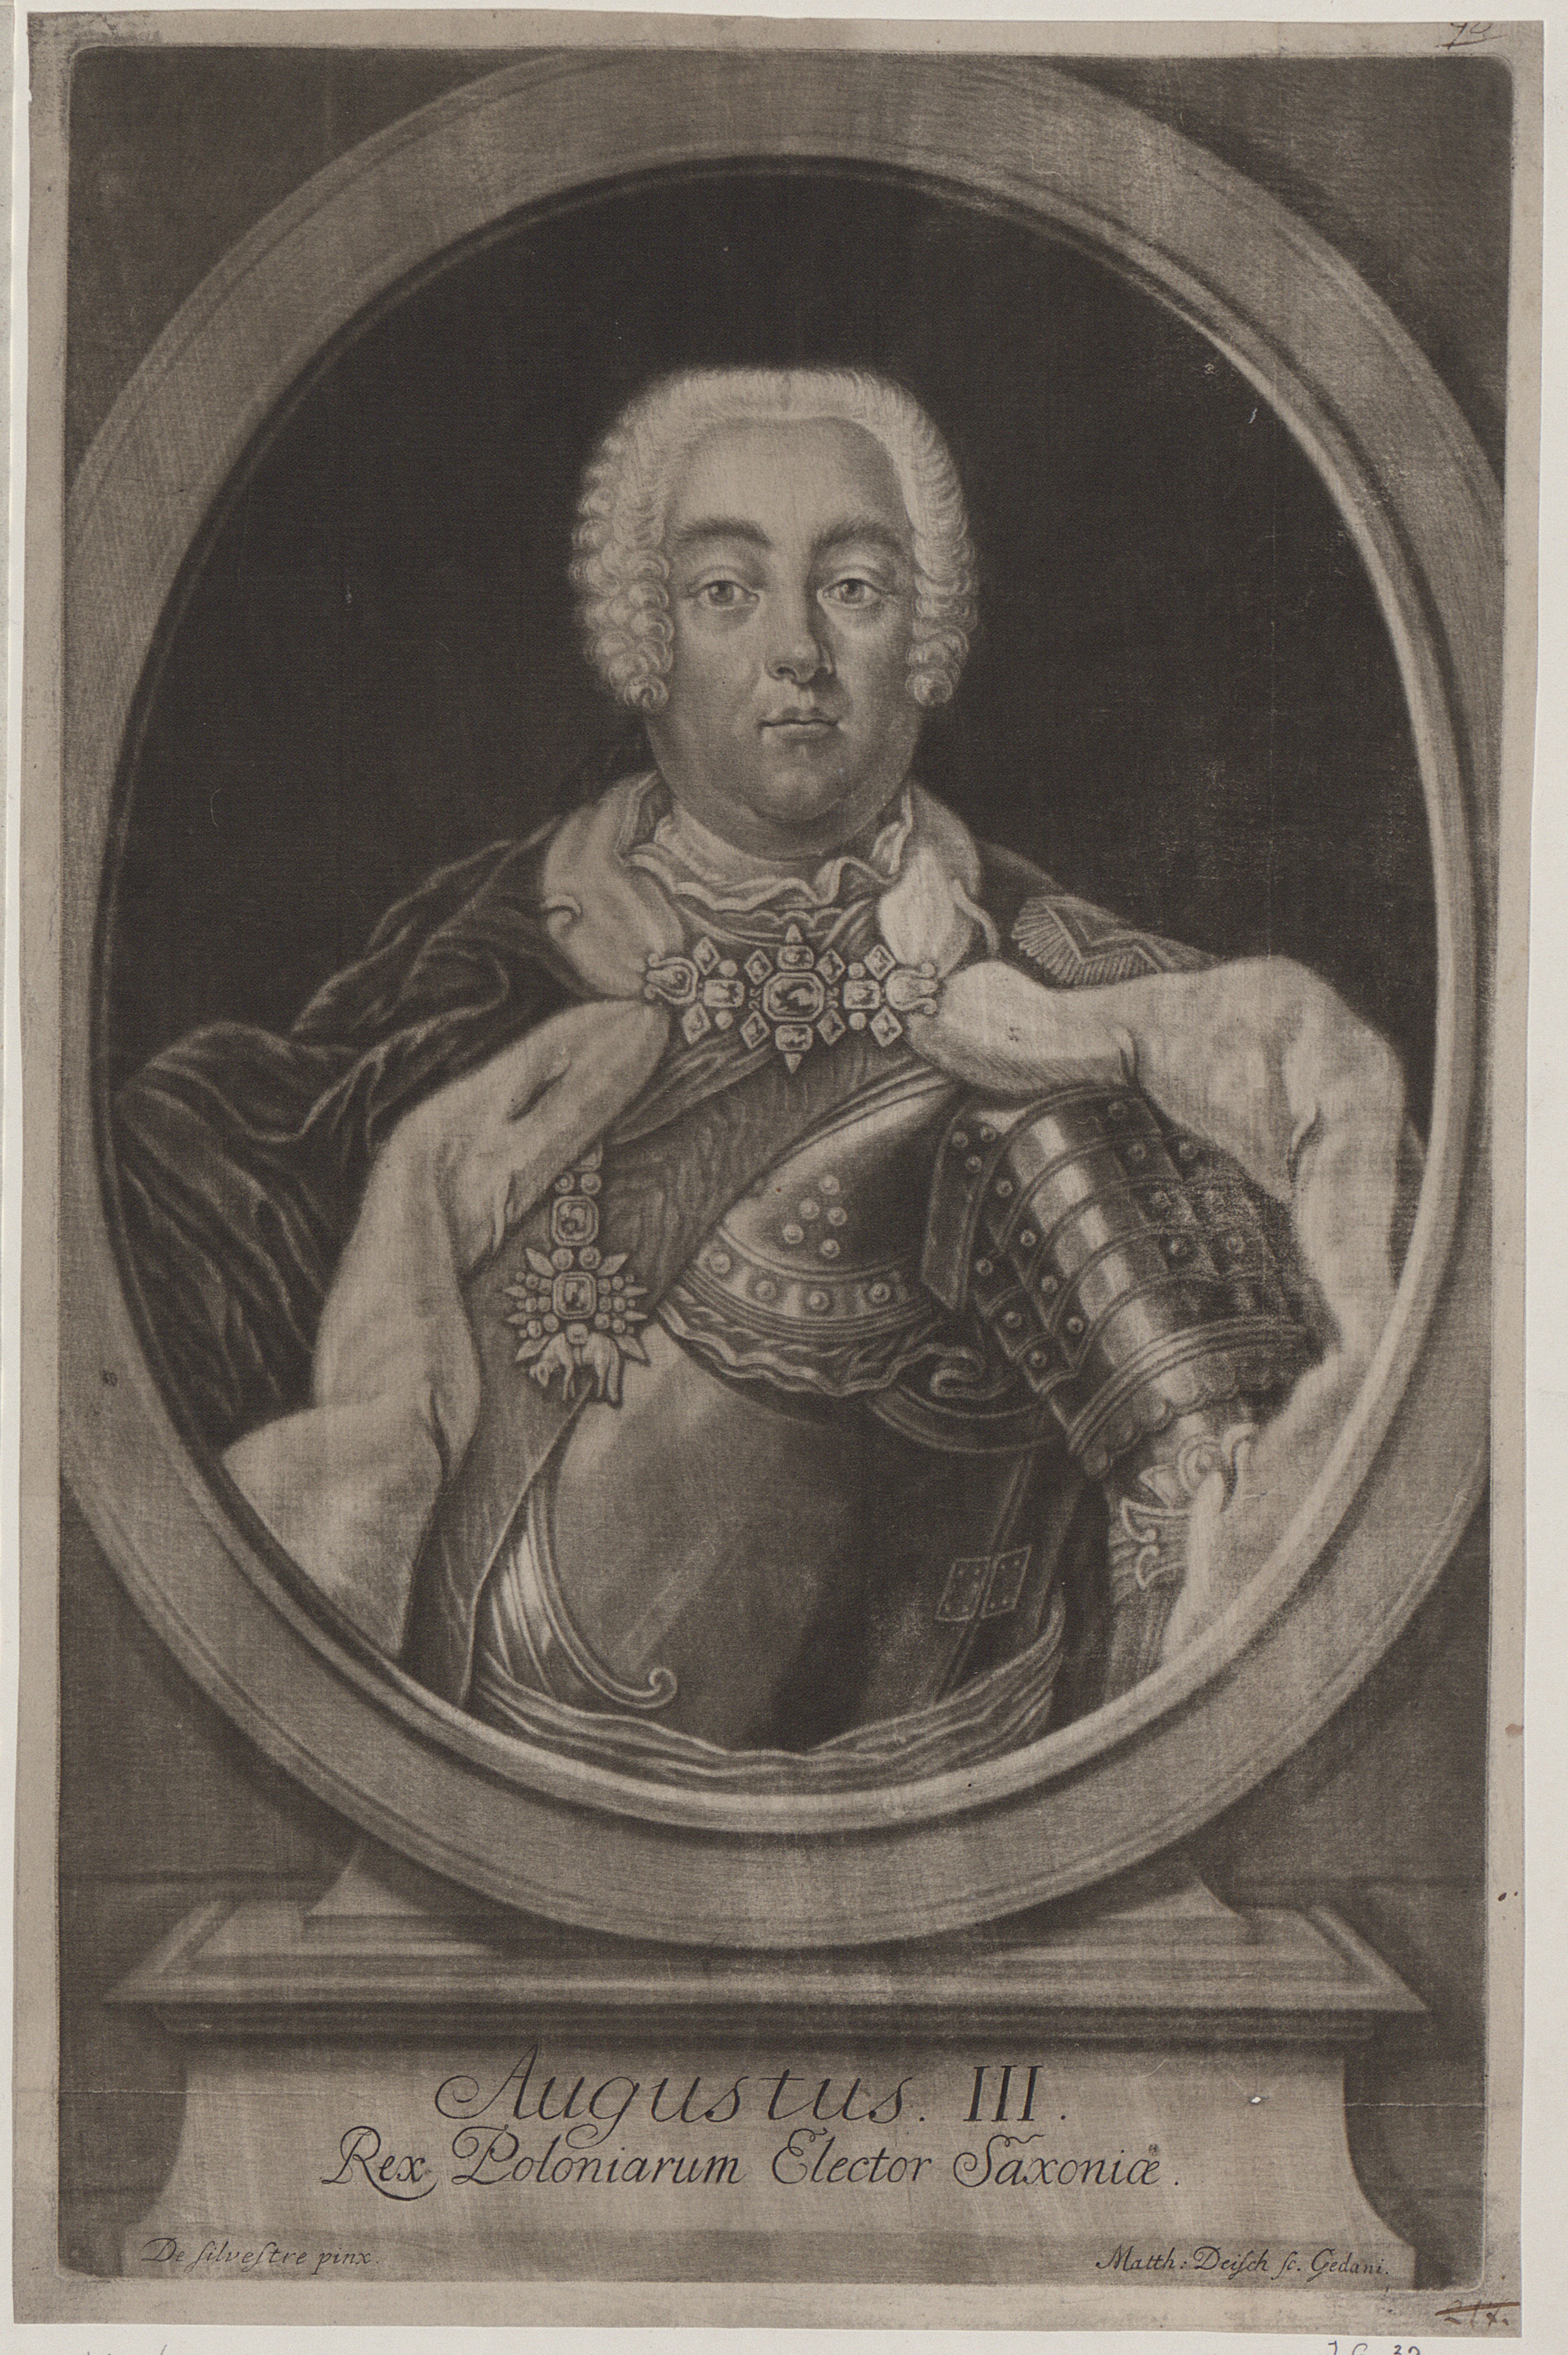 August III Król Polski, ok 1763, Mateusz Deisch, polona.pl/item/augustus-iii-rex-poloniarum